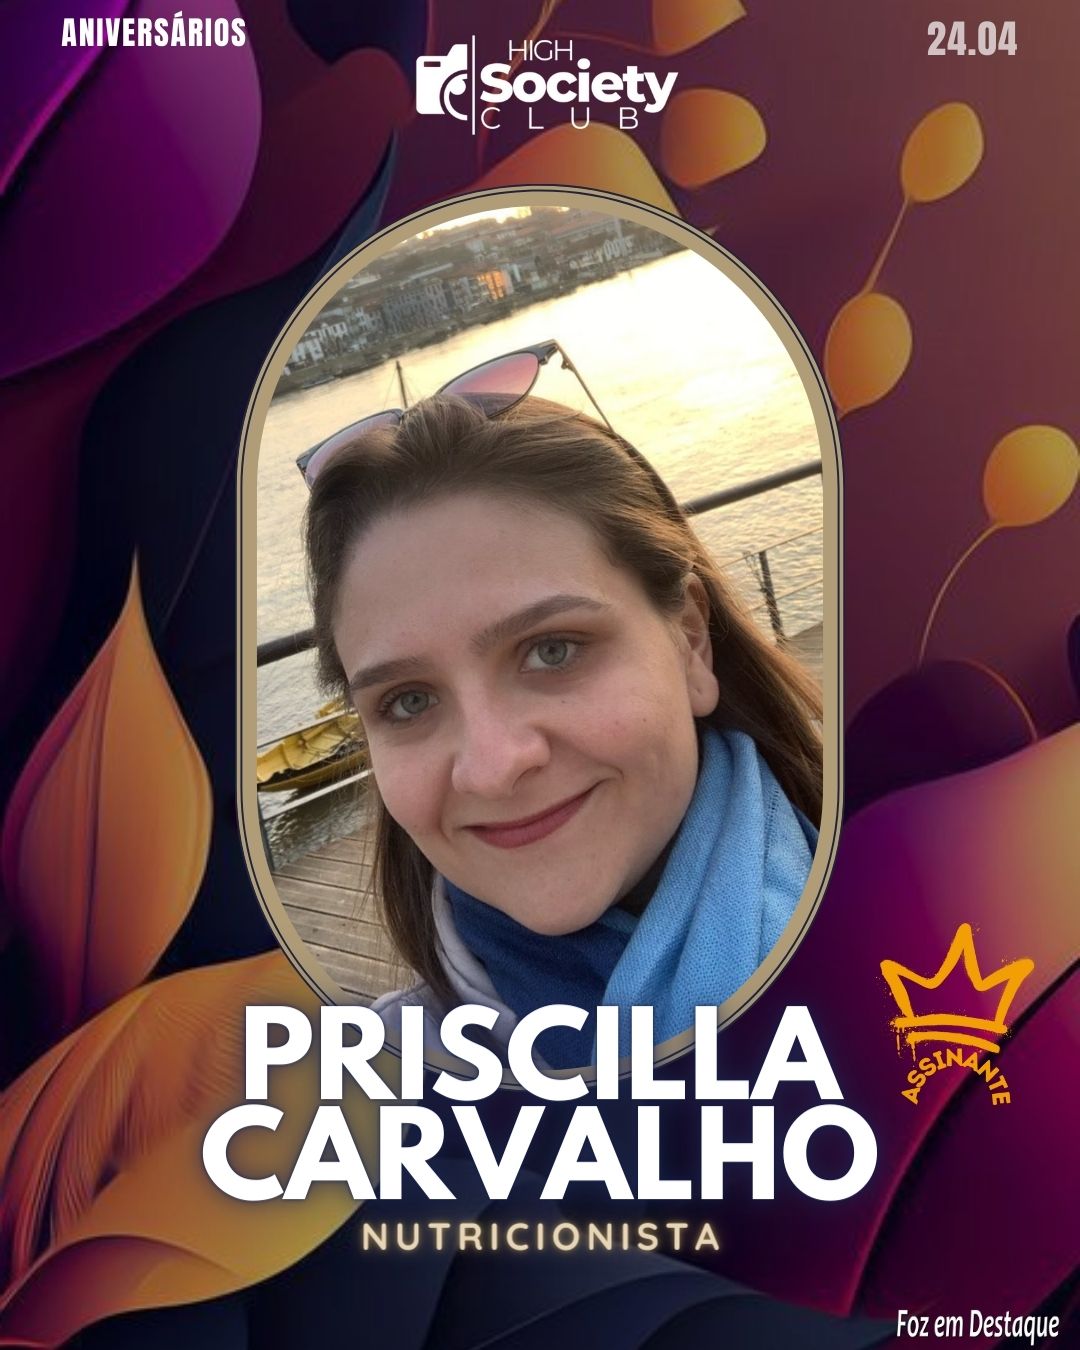 Priscilla Carvalho - Nutricionista
 Aniversários 24 de Abril 2024 High Society Club Foz em Destaque